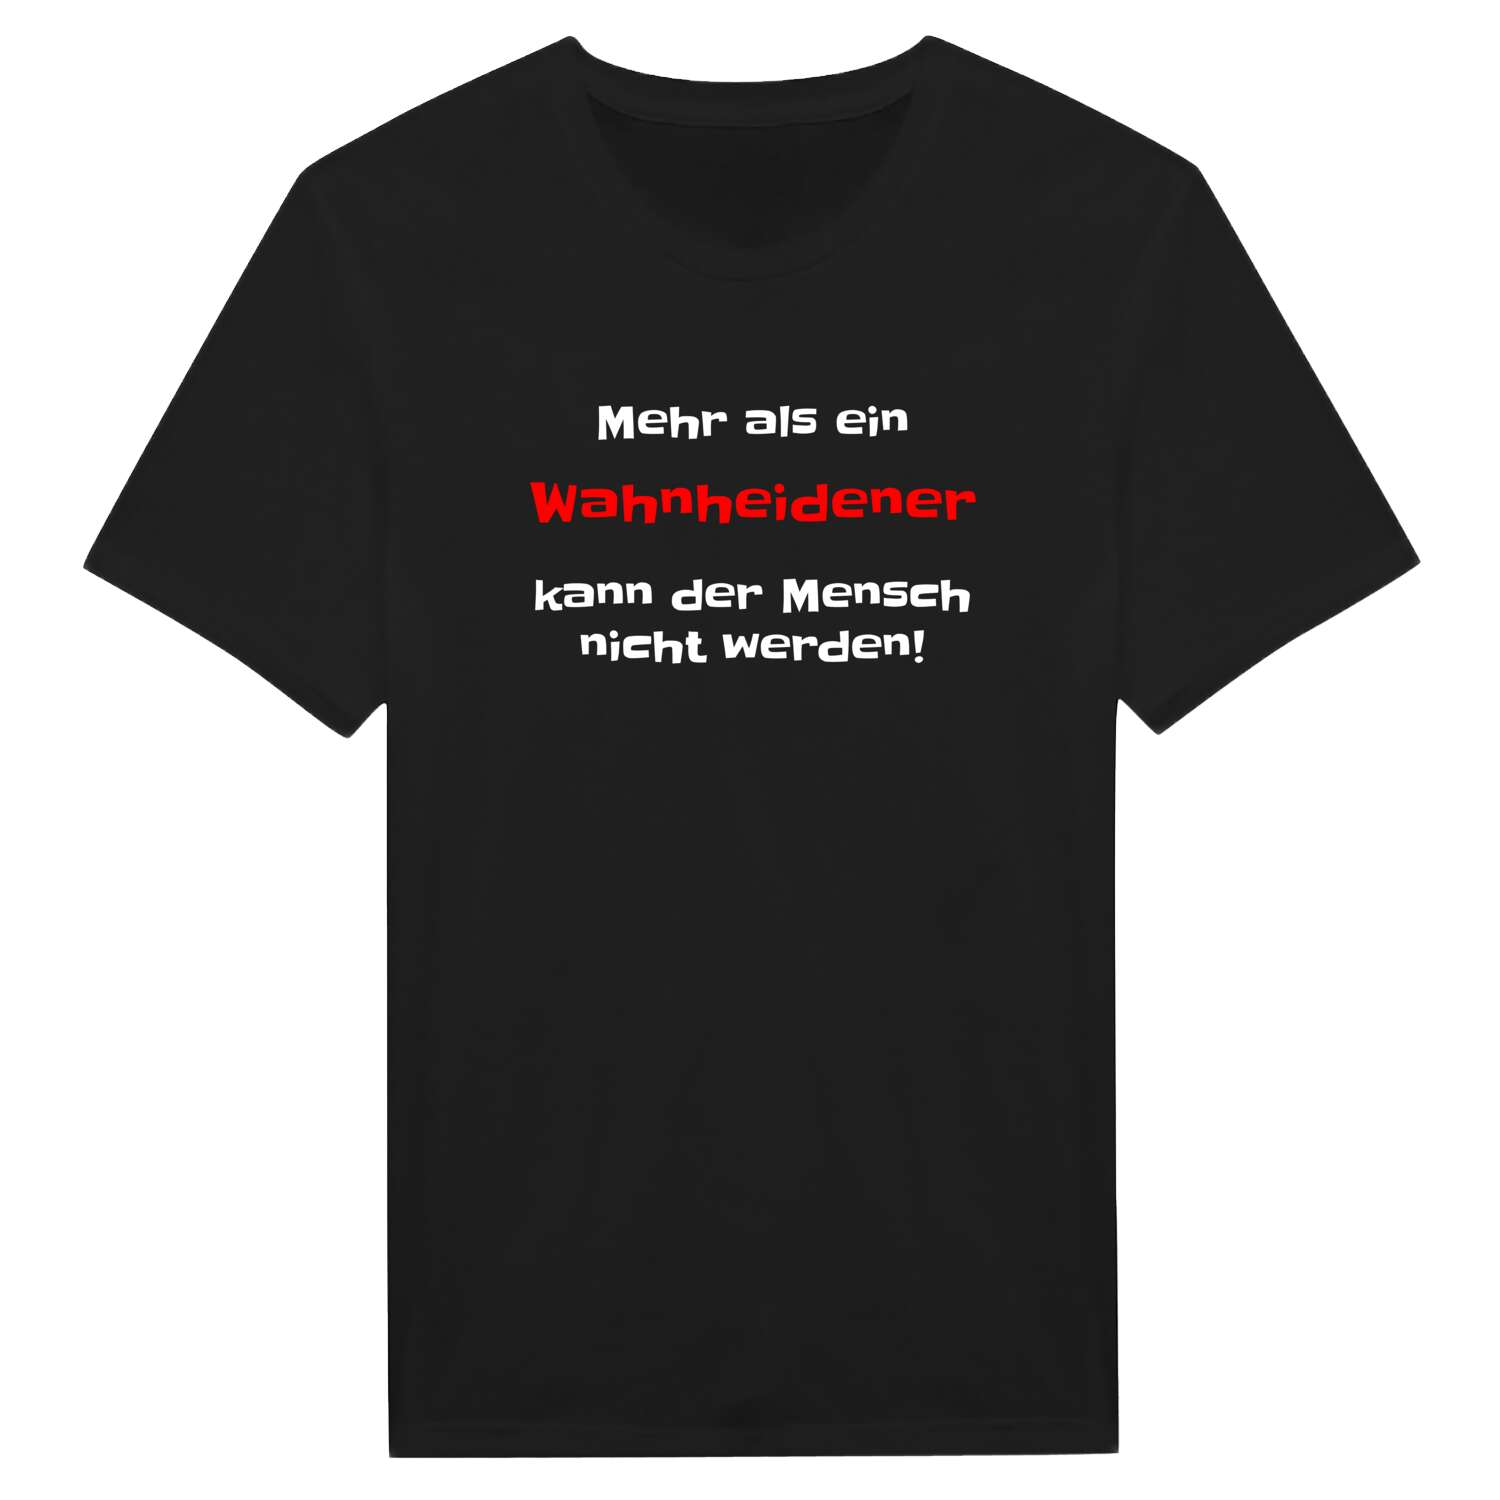 Wahnheide T-Shirt »Mehr als ein«